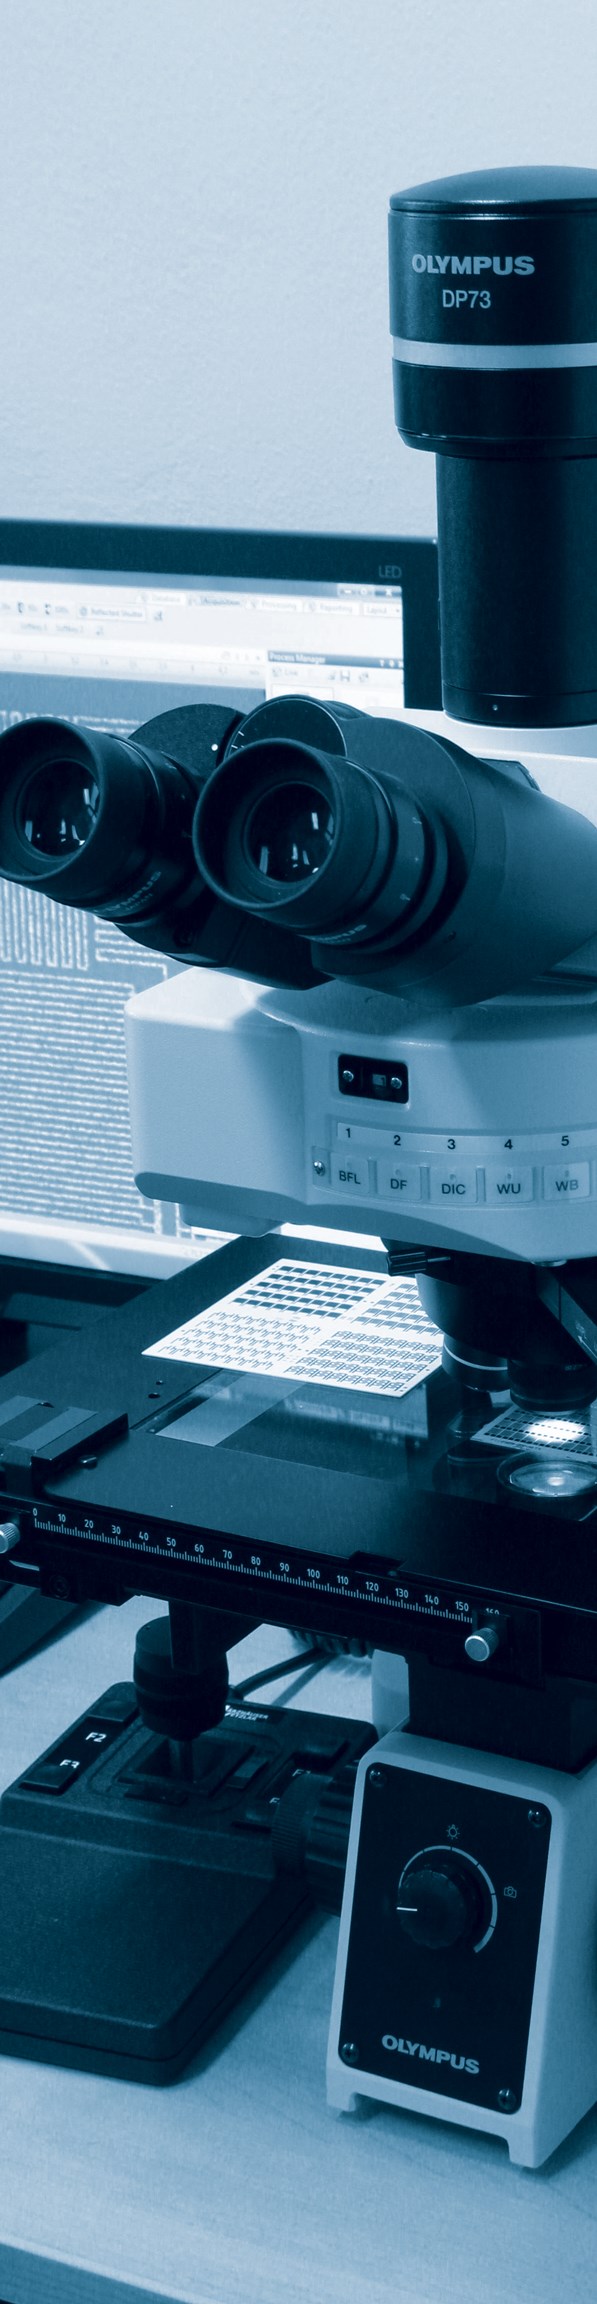 Mikroskopie a materiálografie Detailní zobrazení povrchu předmětů s vysokým rozlišením je častým požadavkem při diagnostice materiálů, kontrole vyráběných komponentů nebo při studiu defektů.